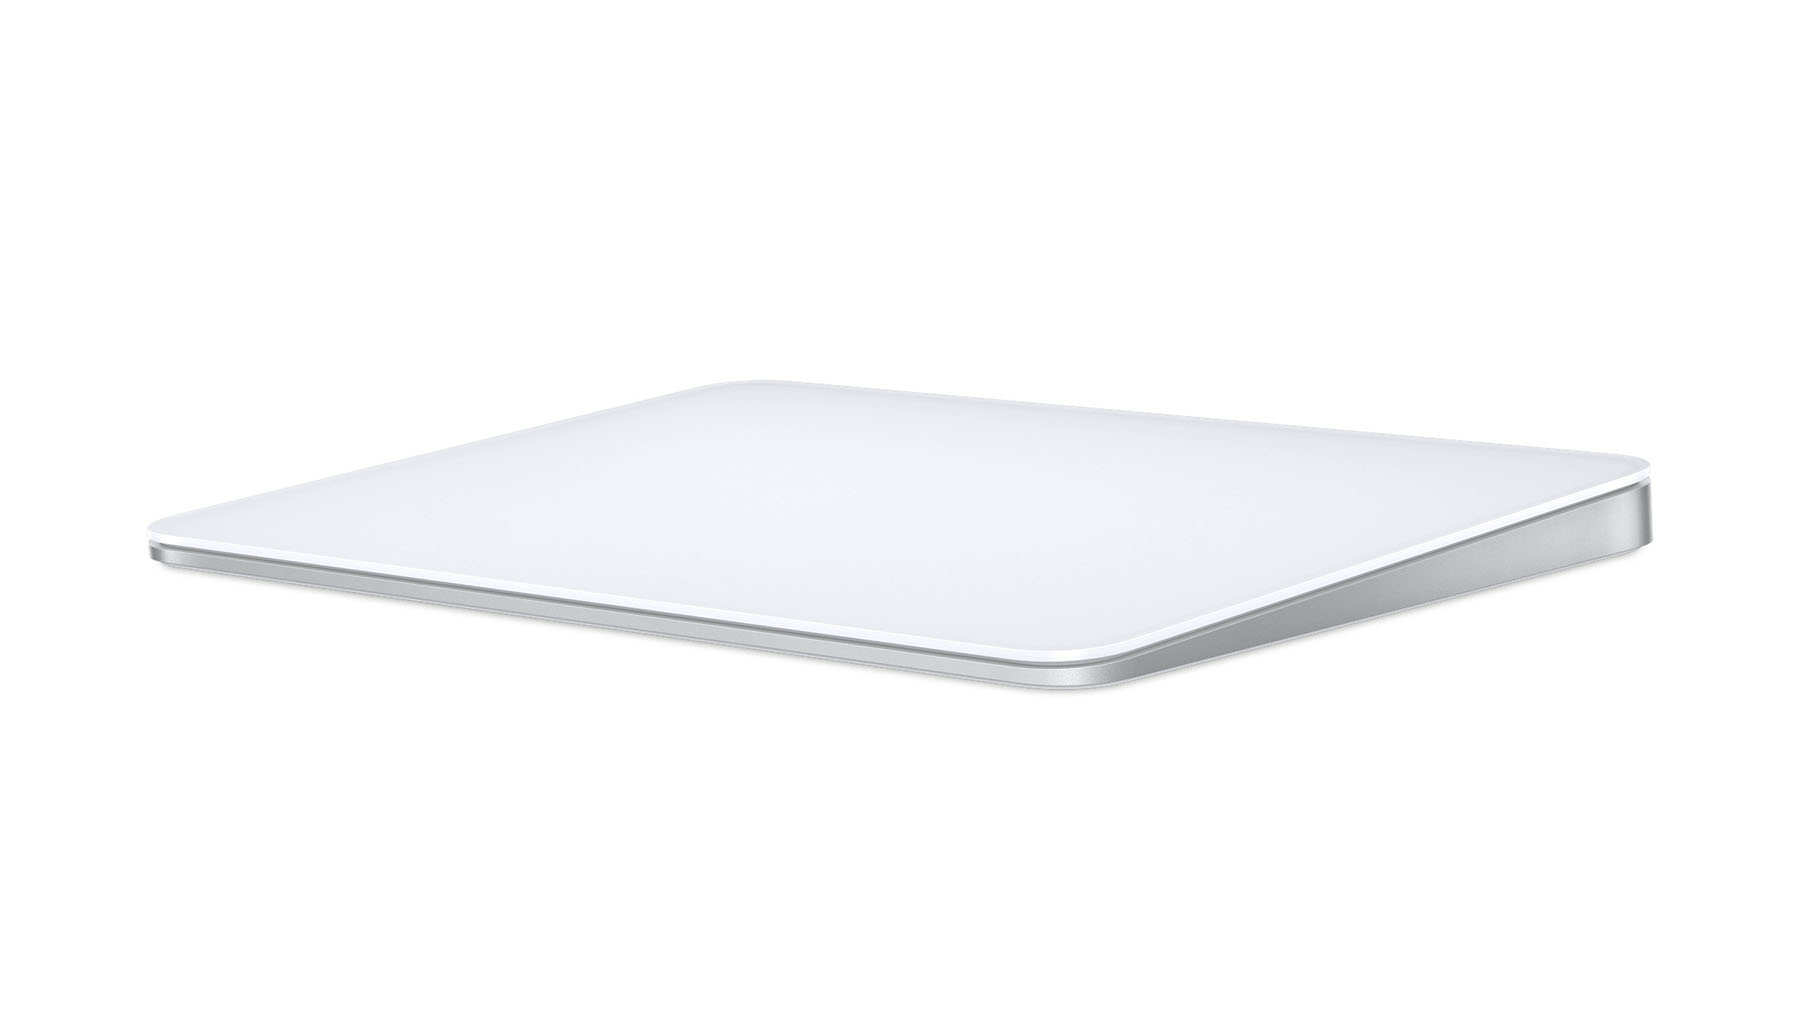 Снимок продукта: трекпад Apple Magic на белом фоне.